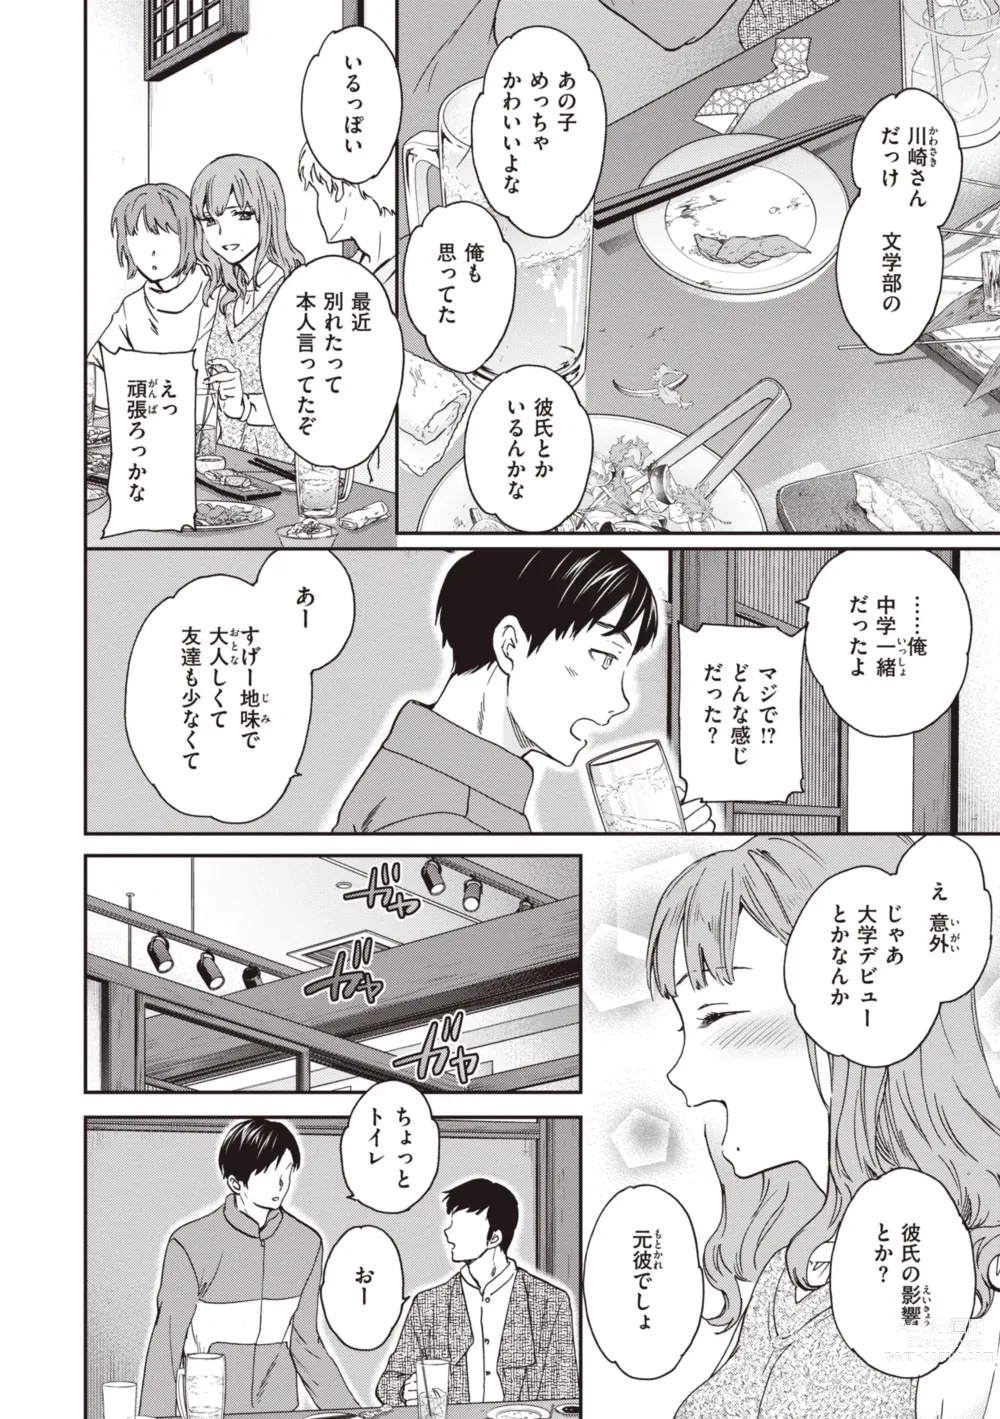 Page 4 of manga Ippai Yurashite - Bounce me a lot